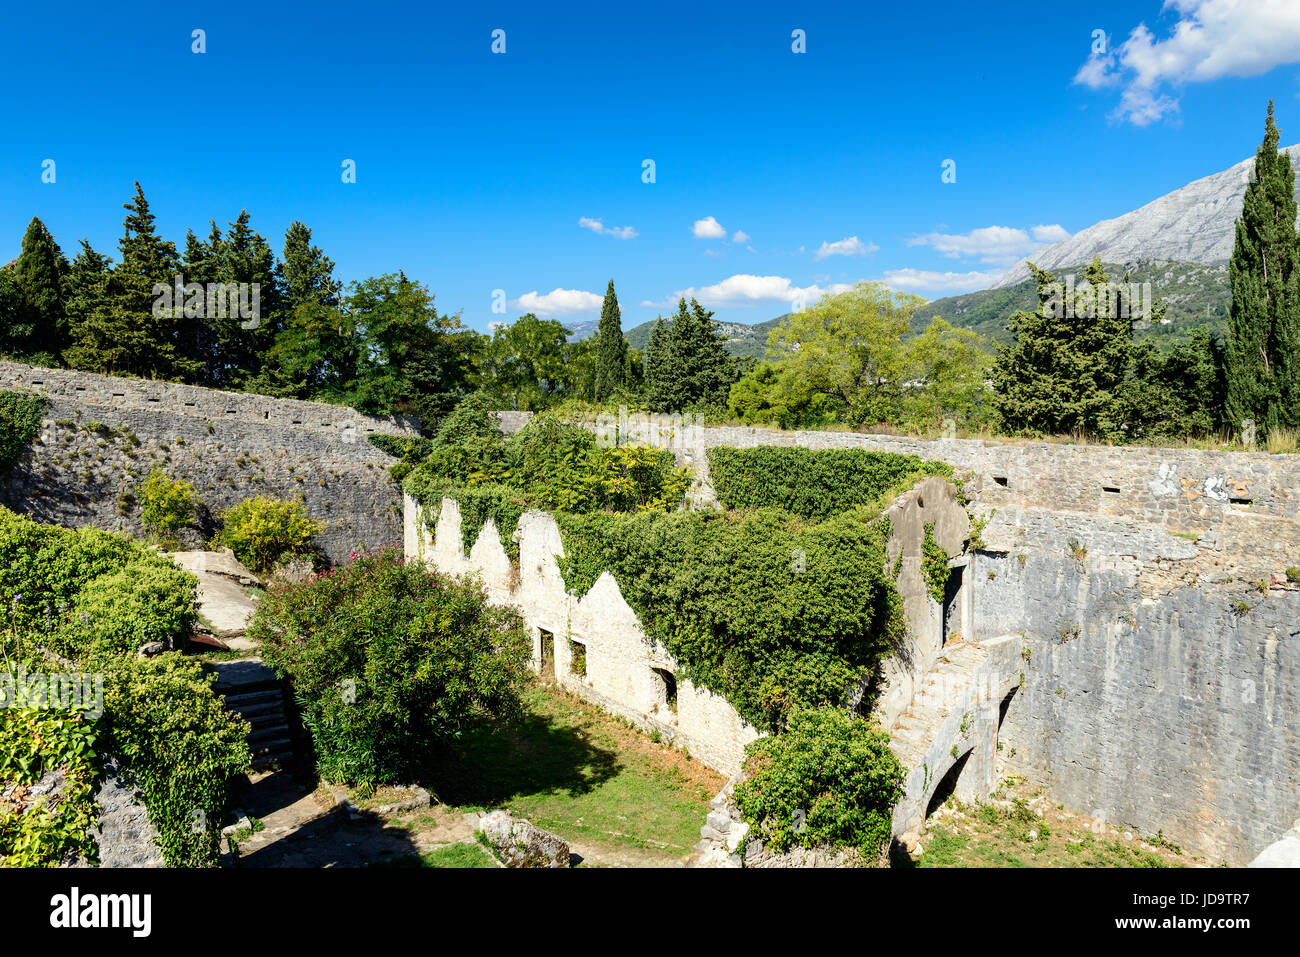 Le rovine della fortezza medievale. Fortezza Shpanola, Herceg Novi, Montenegro, Balcani, Europa Foto Stock